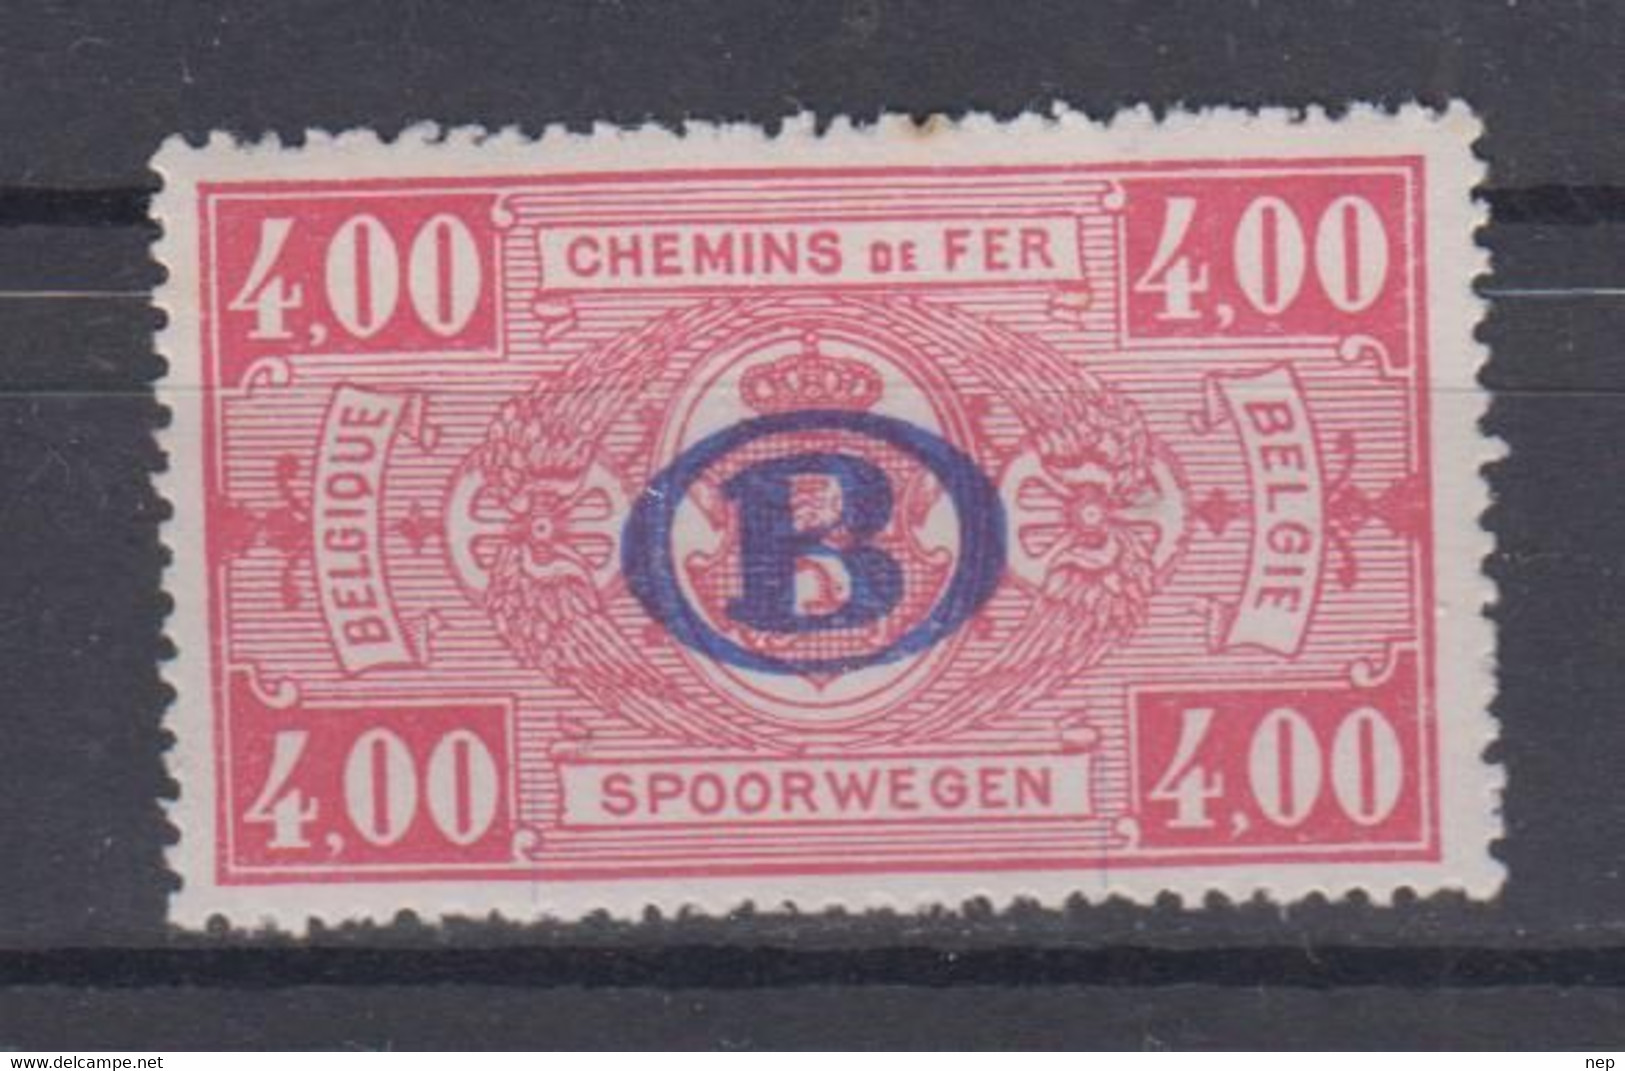 BELGIË - OBP - 1940 - TR 225 - MNH** - Mint